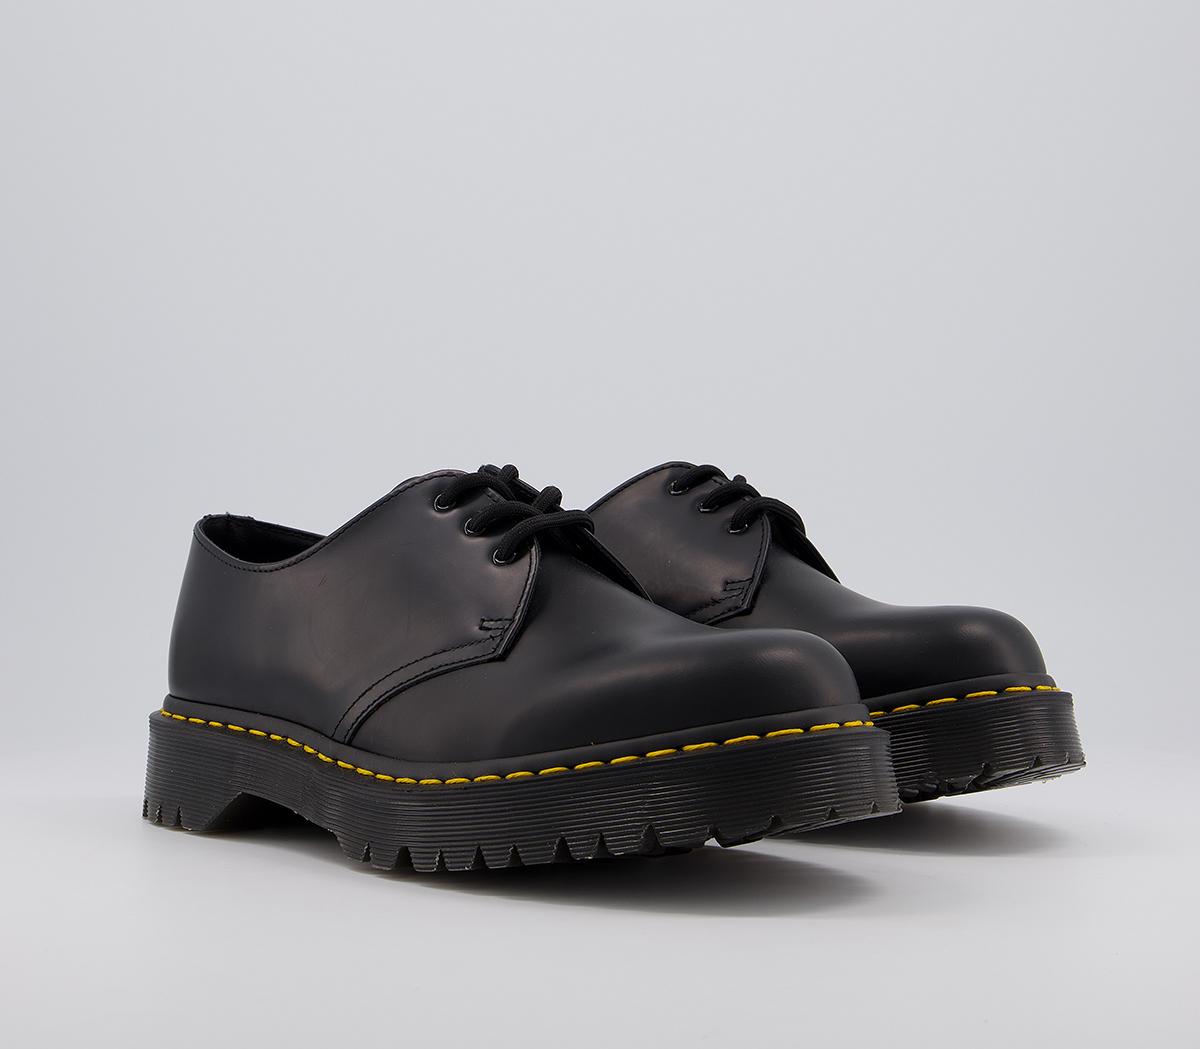 Dr. Martens 1461 Bex Shoe Black - Smart